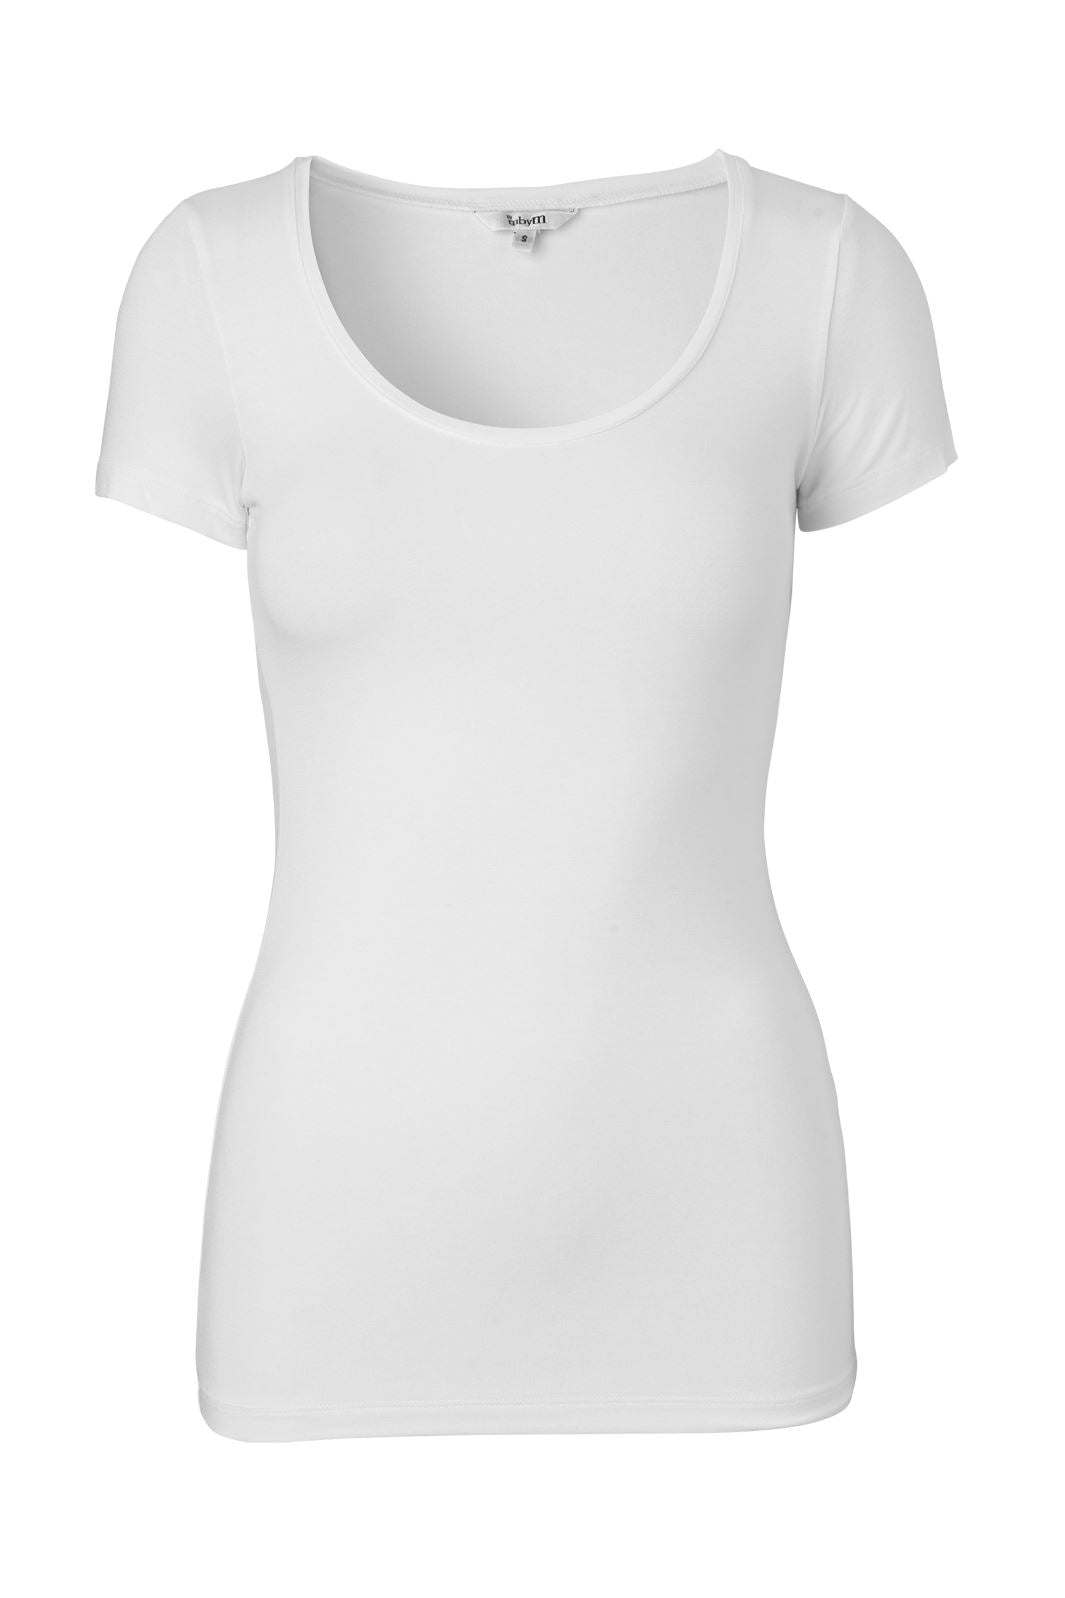 MbyM - Siliana - Optical White T-shirts 